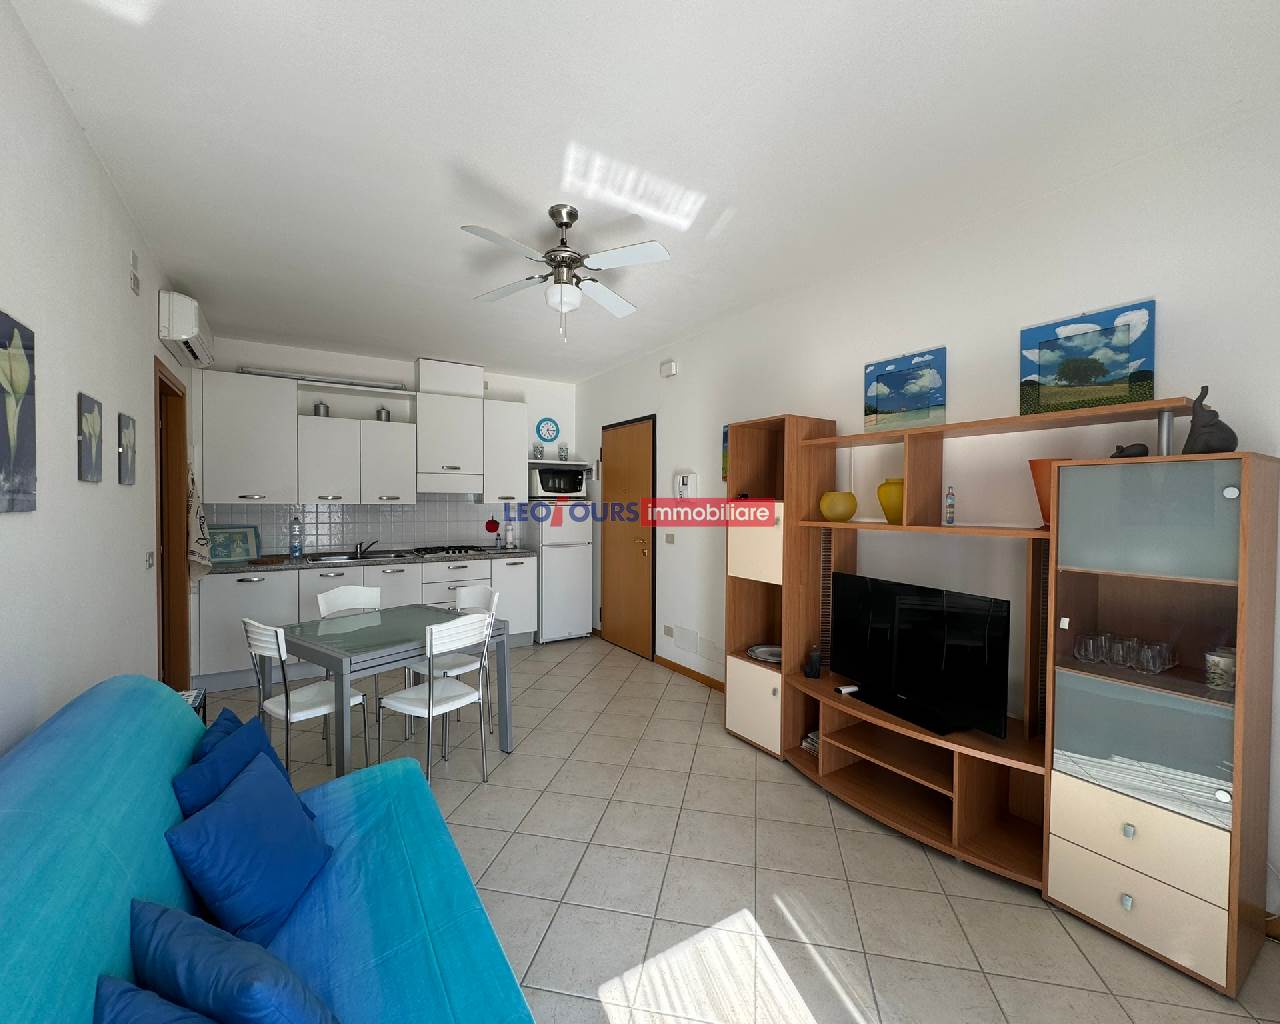 Zwei-Zimmer-Wohnung in Residenz am Meer, Cavallino